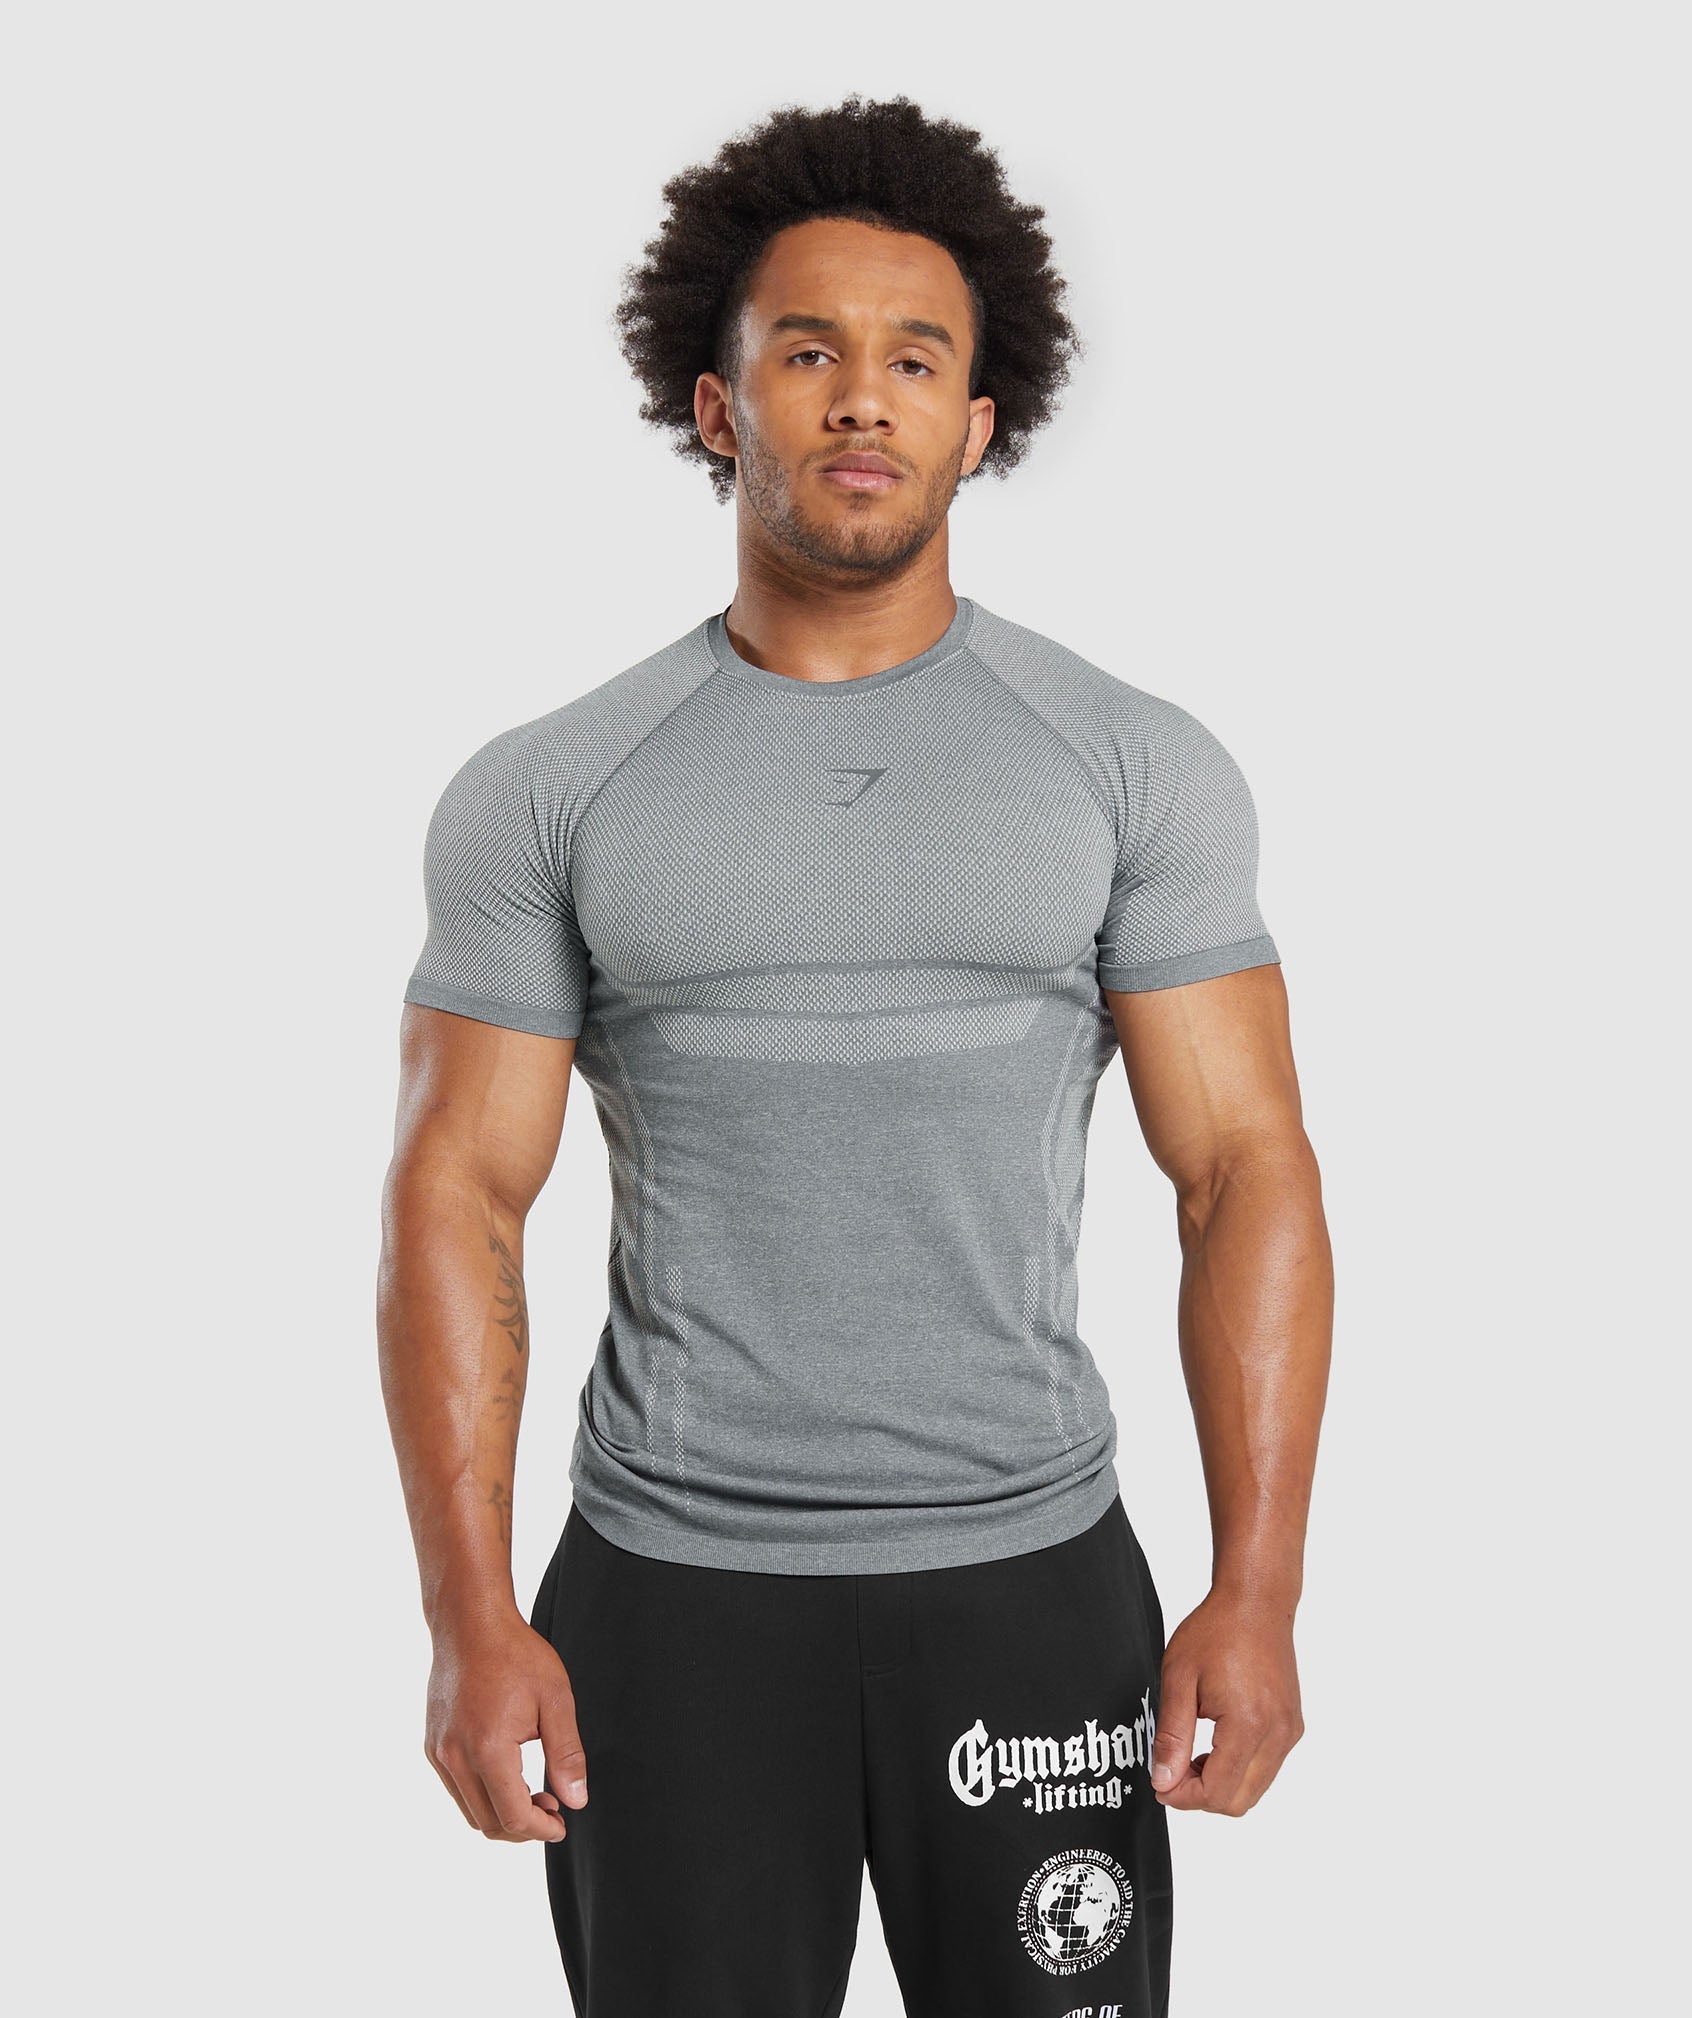 Gymshark compression shirt